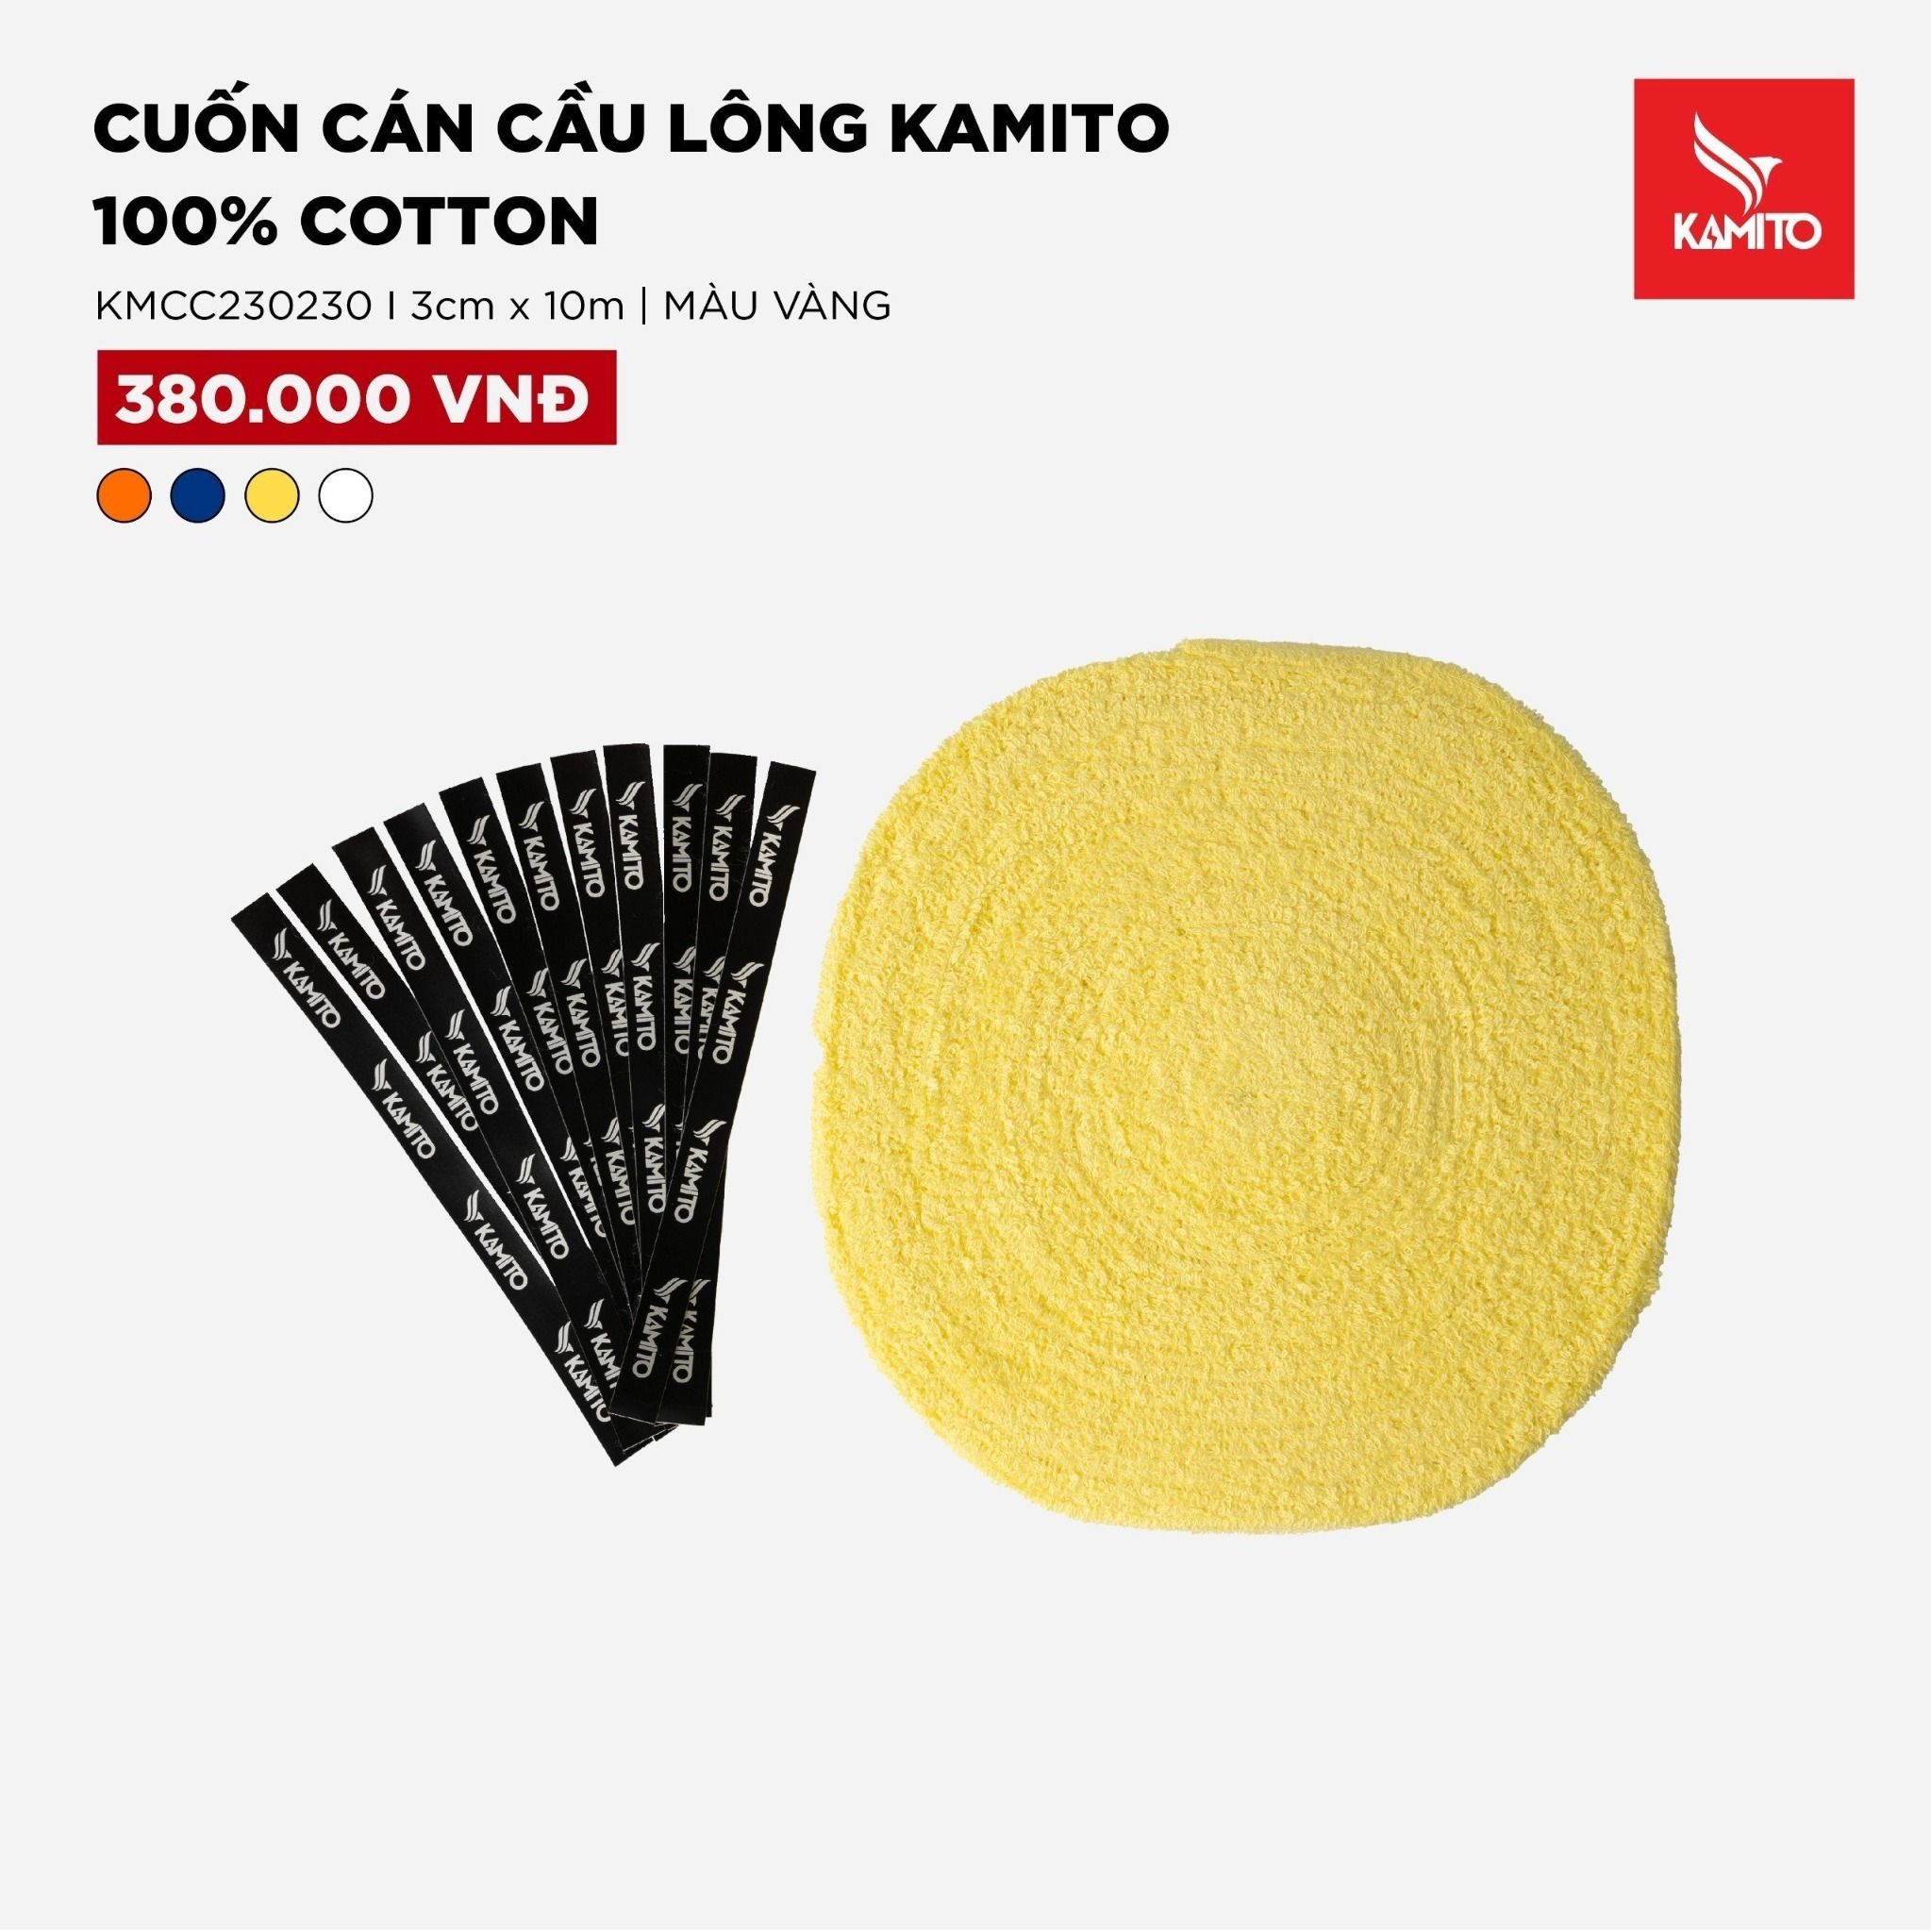  Cuốn cán cầu lông Kamito 100% cotton 